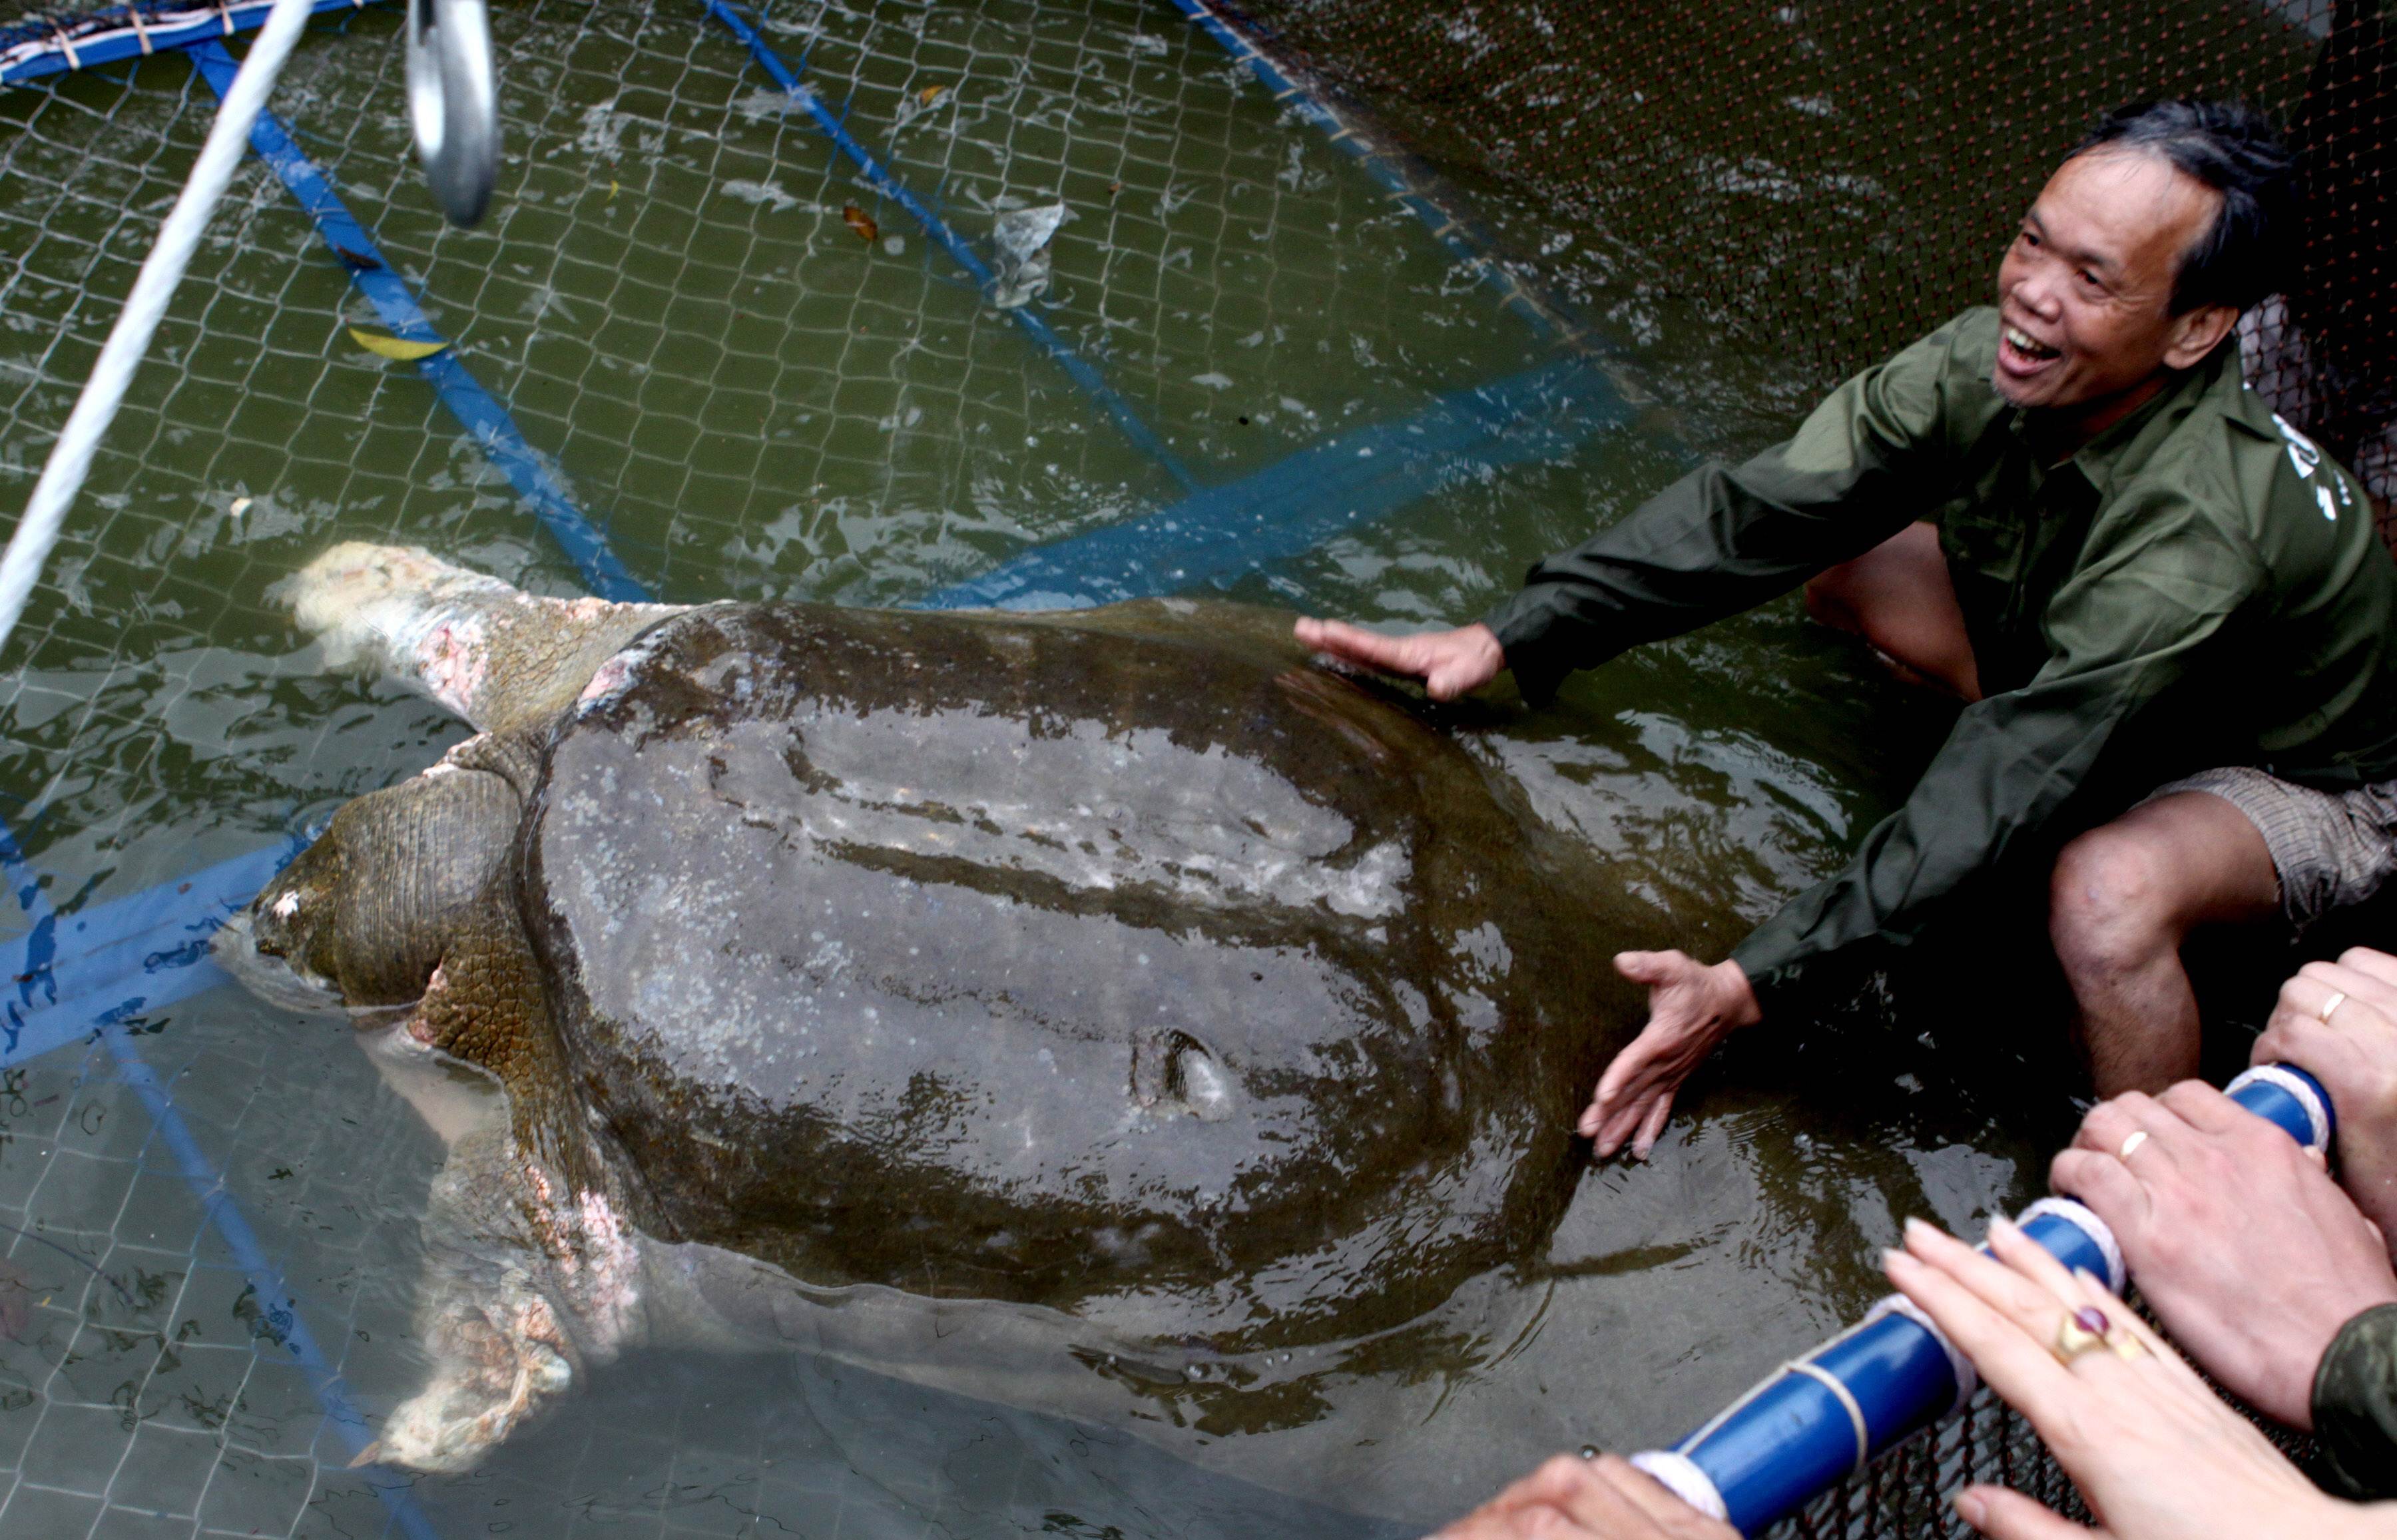 90 éves korában meghalt az egyik legritkább teknősfaj utolsó ismert nősténye